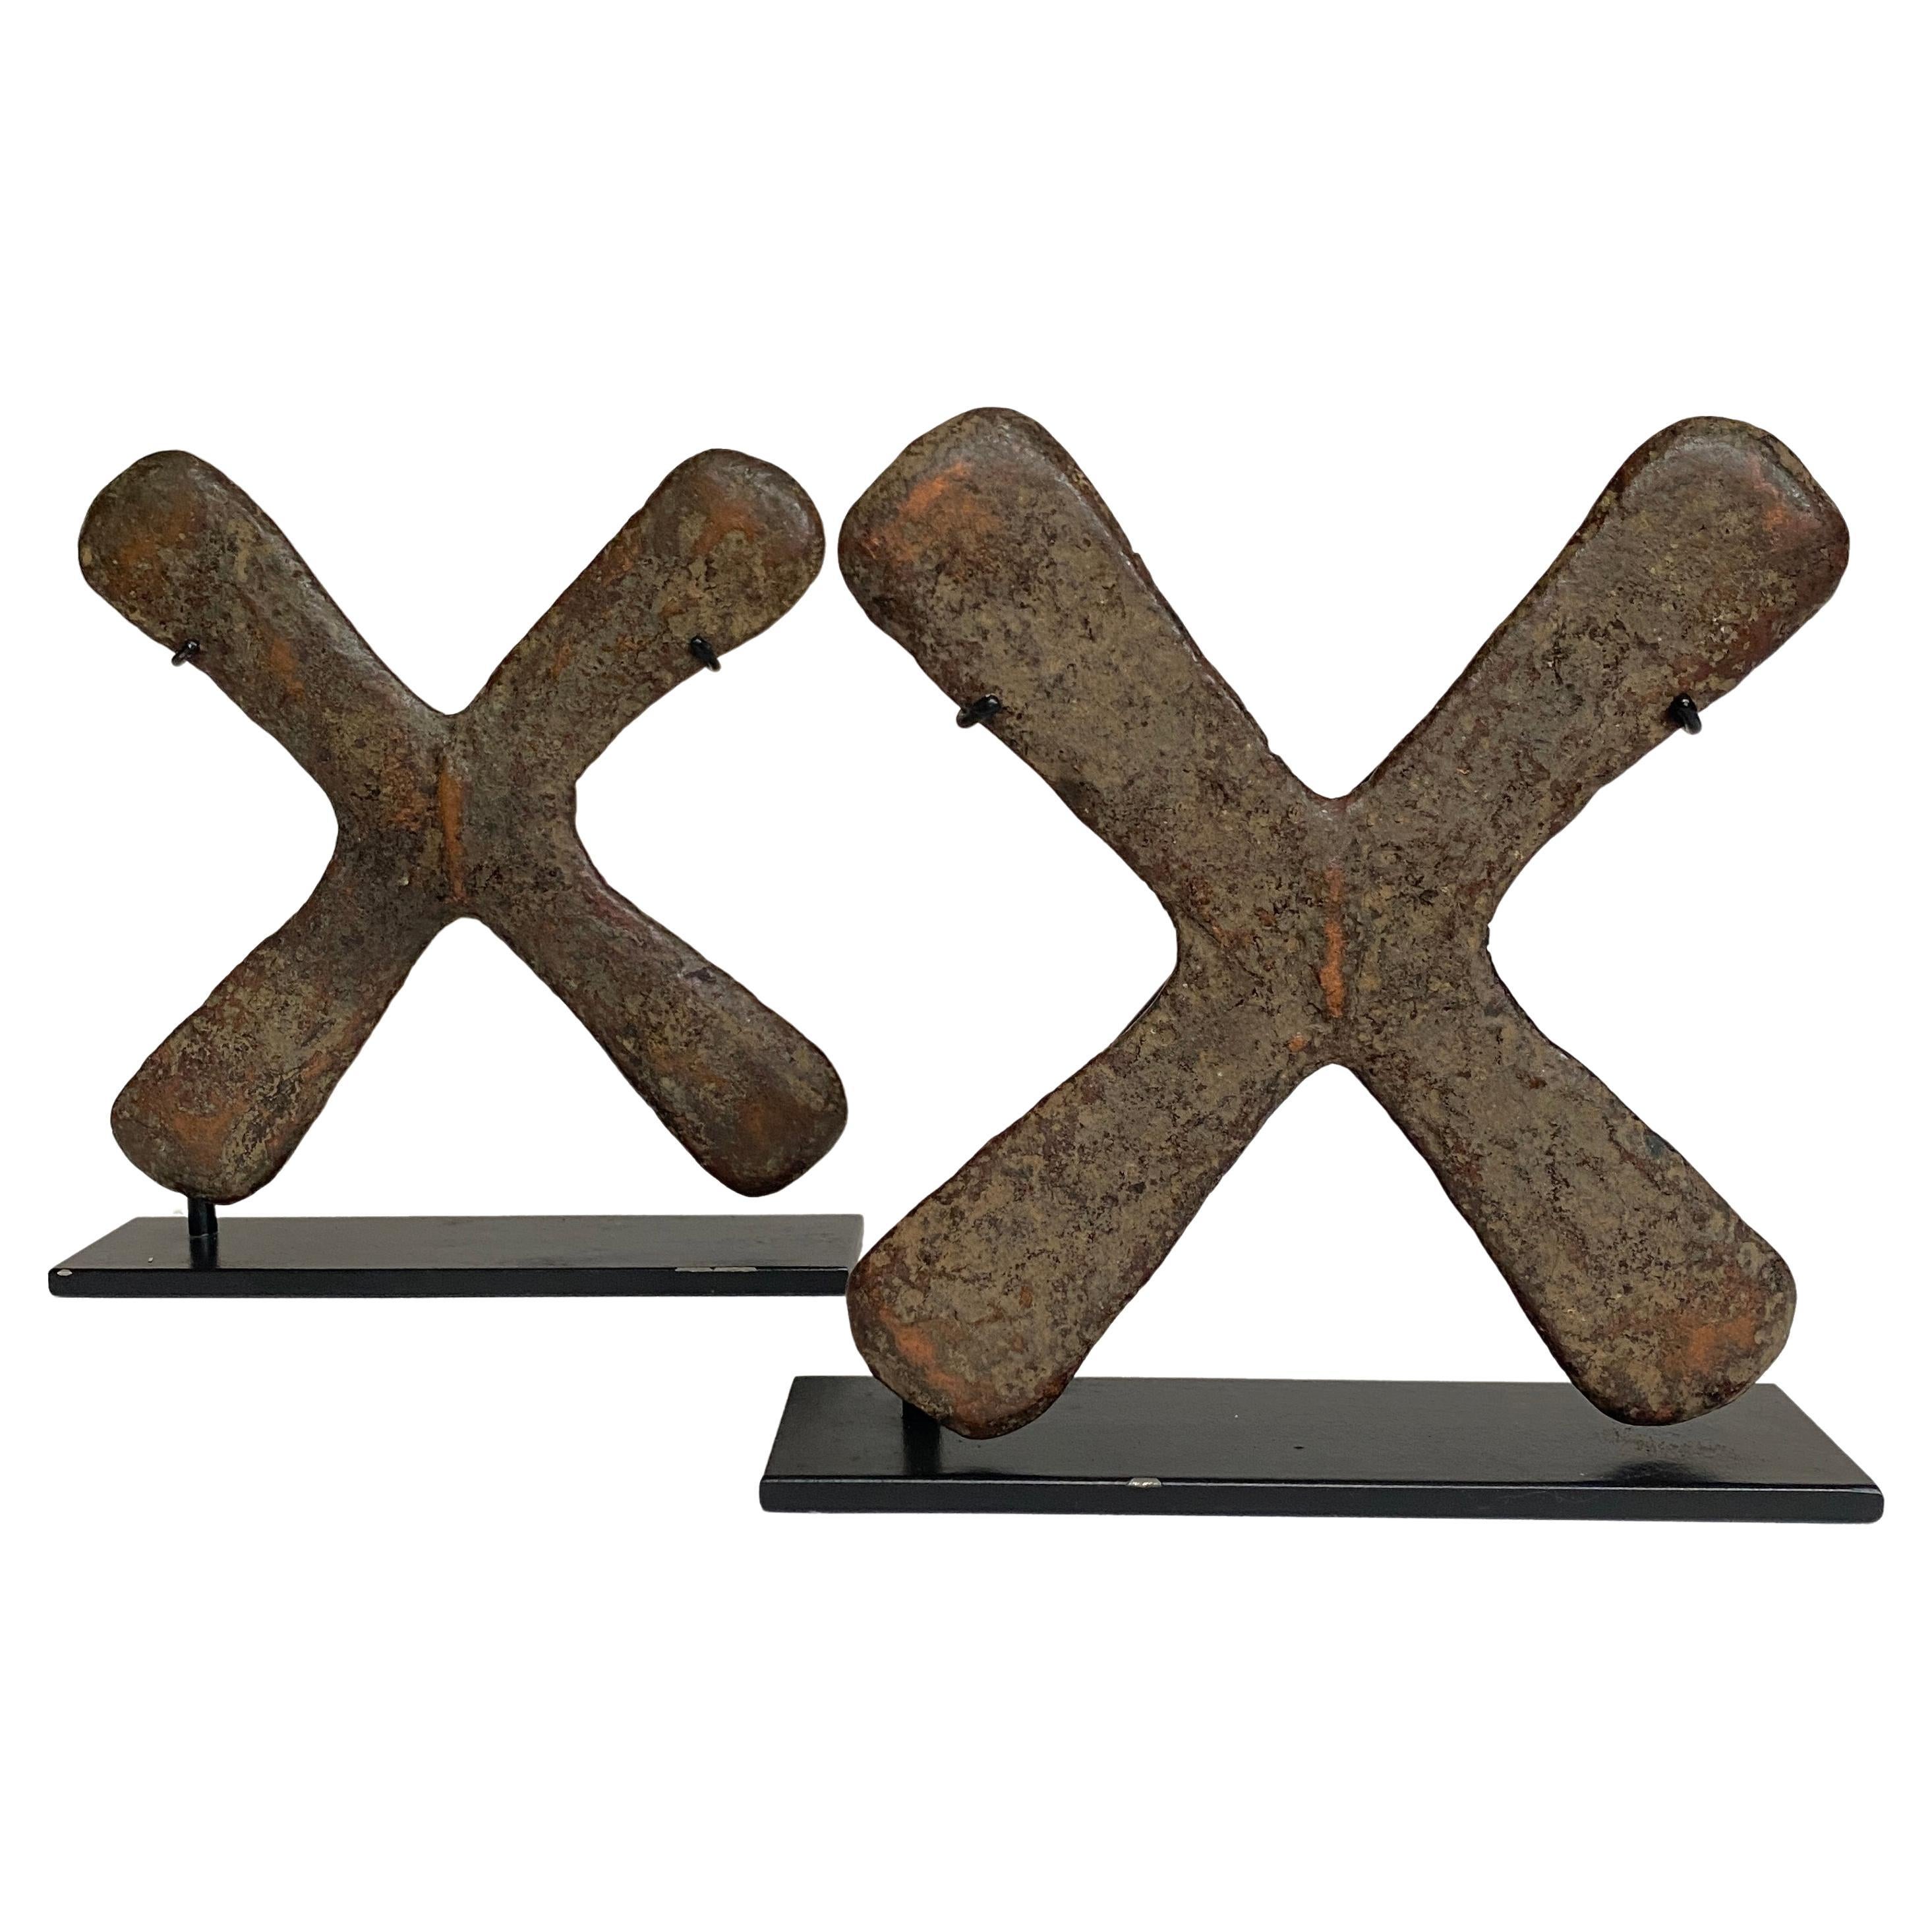 19th Century, Copper Crosses Called Handa, Katanga Region, D. R. Congo